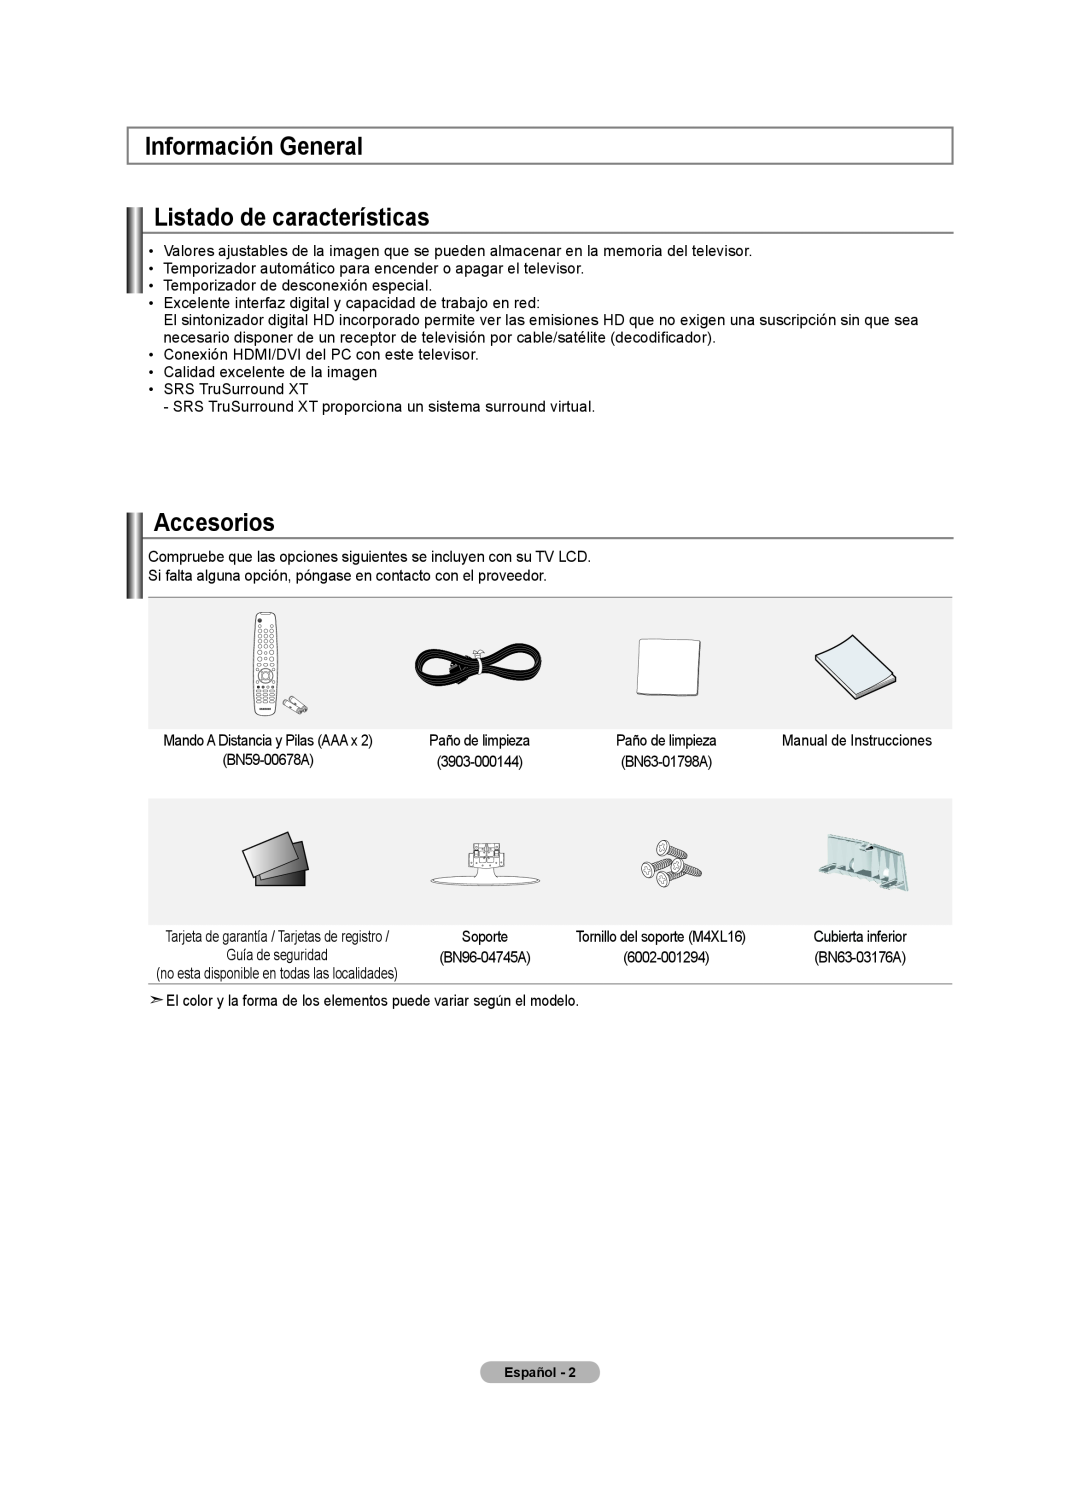 Samsung Series L3, LN22A330 Información General Listado de características, Accesorios, Mando A Distancia y Pilas AAA x 